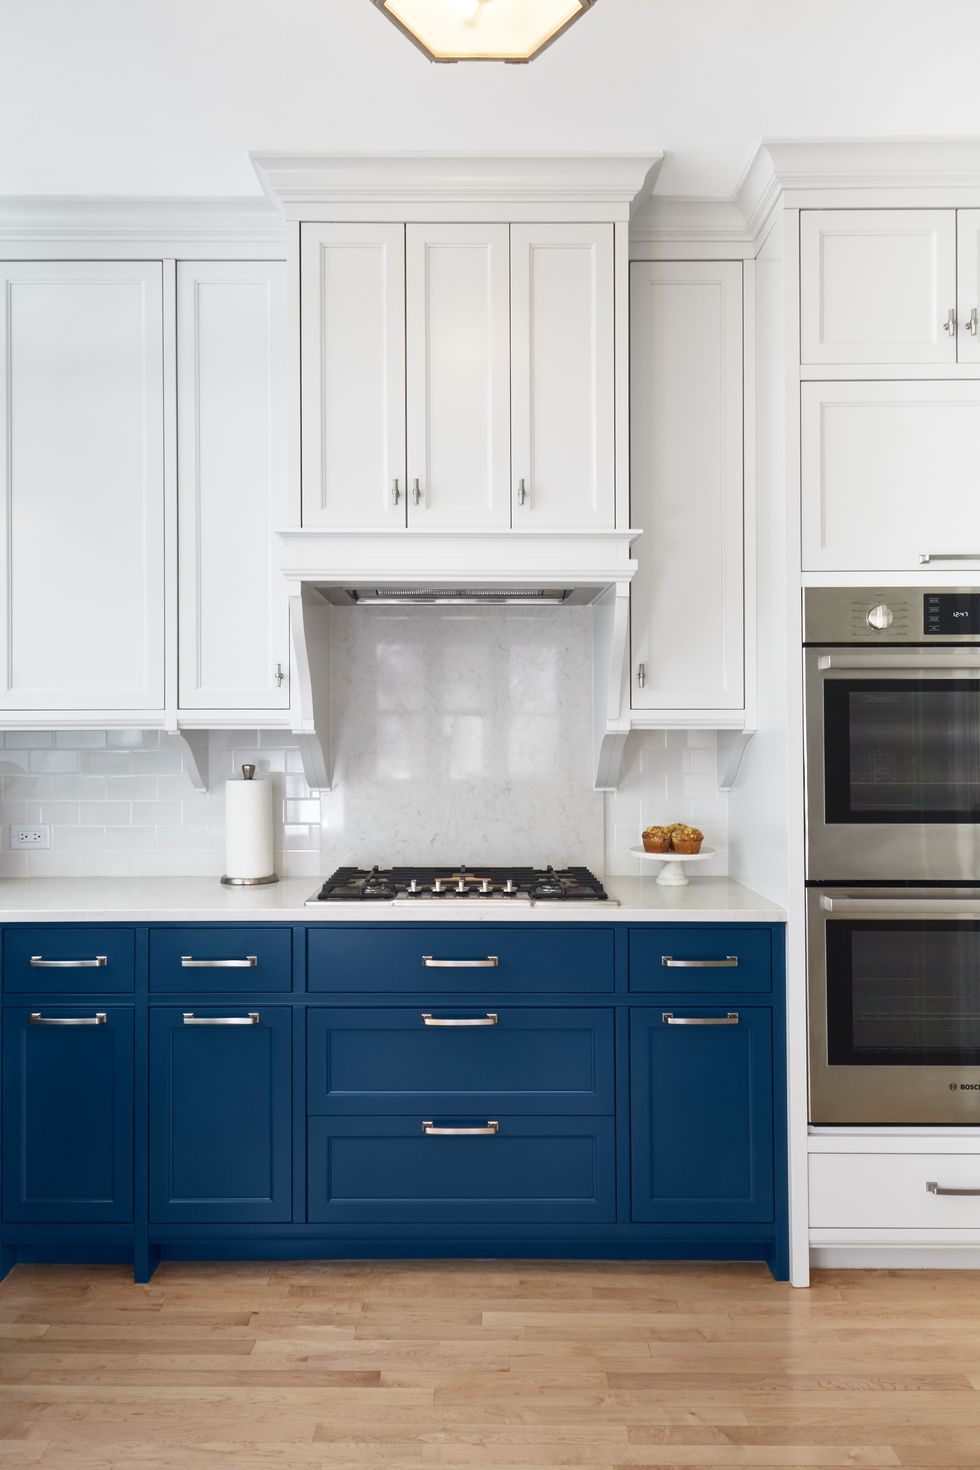 Nếu bạn là người yêu thích phong cách tối giản, cả về số lượng, kiểu dáng nội thất lẫn số màu sắc được chọn lựa thì tin chắc rằng phòng bếp với sự góp mặt của 2 gam màu quốc dân là trắng và xanh lam sẽ khiến bạn hài lòng.